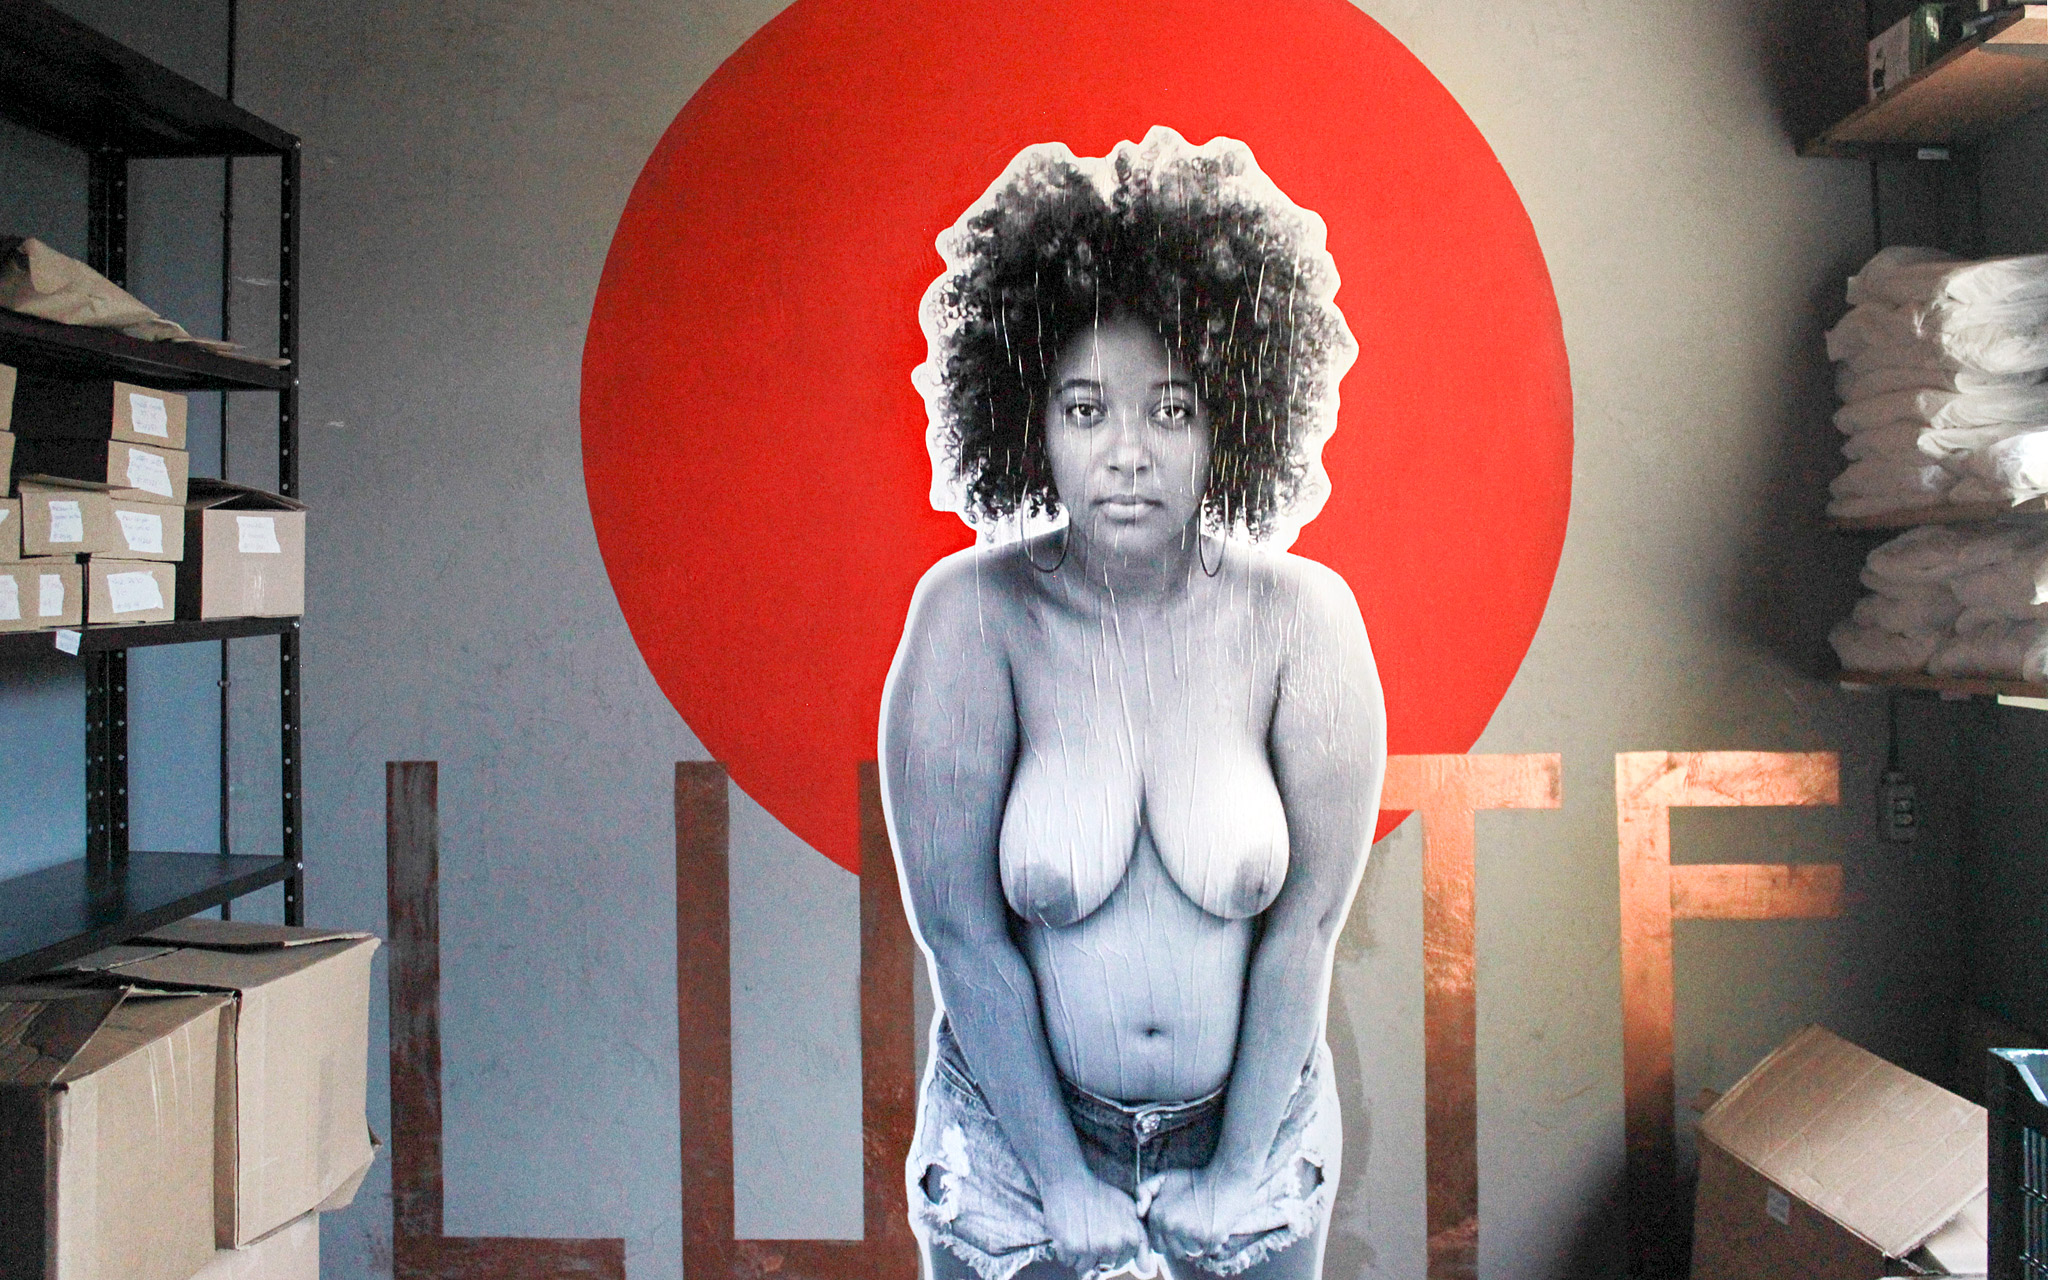 Kuva Puta Peita -liikkeen toimiston seinässä yläosattomasta naisoletetusta henkilöstä.